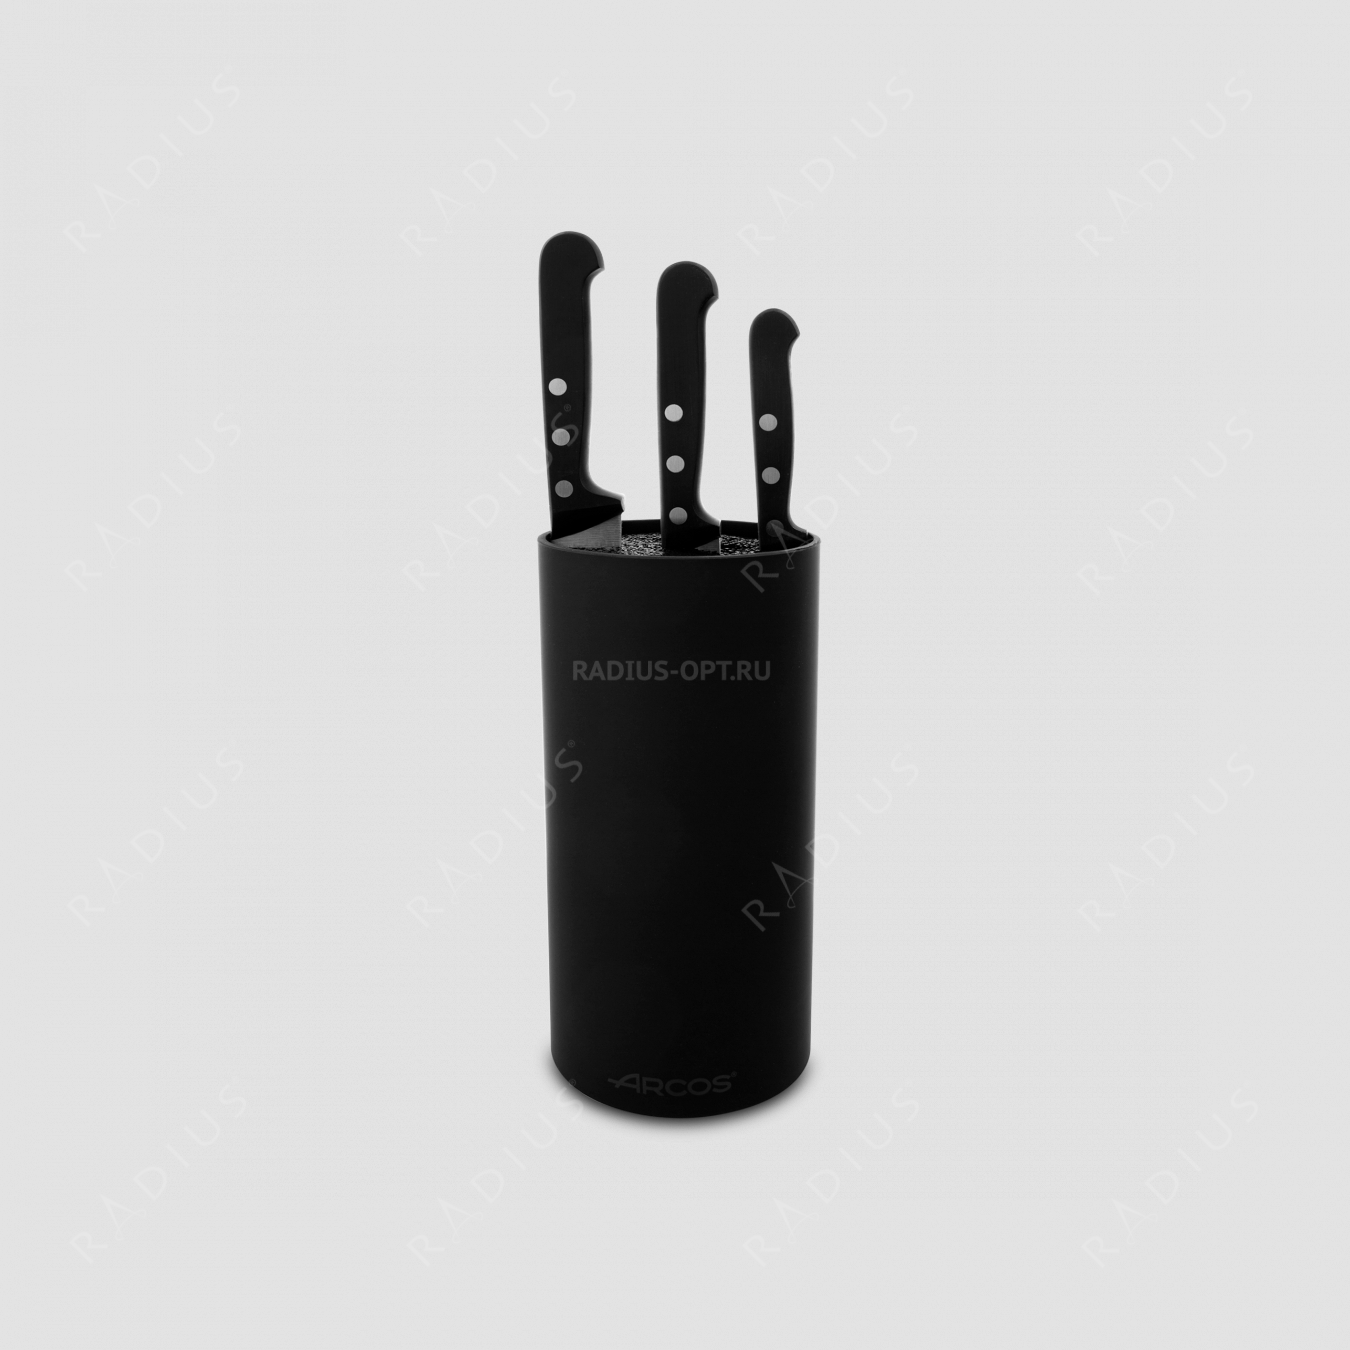 Набор из 3-х кухонных ножей с черной подставкой, серия Universal, ARCOS, Испания